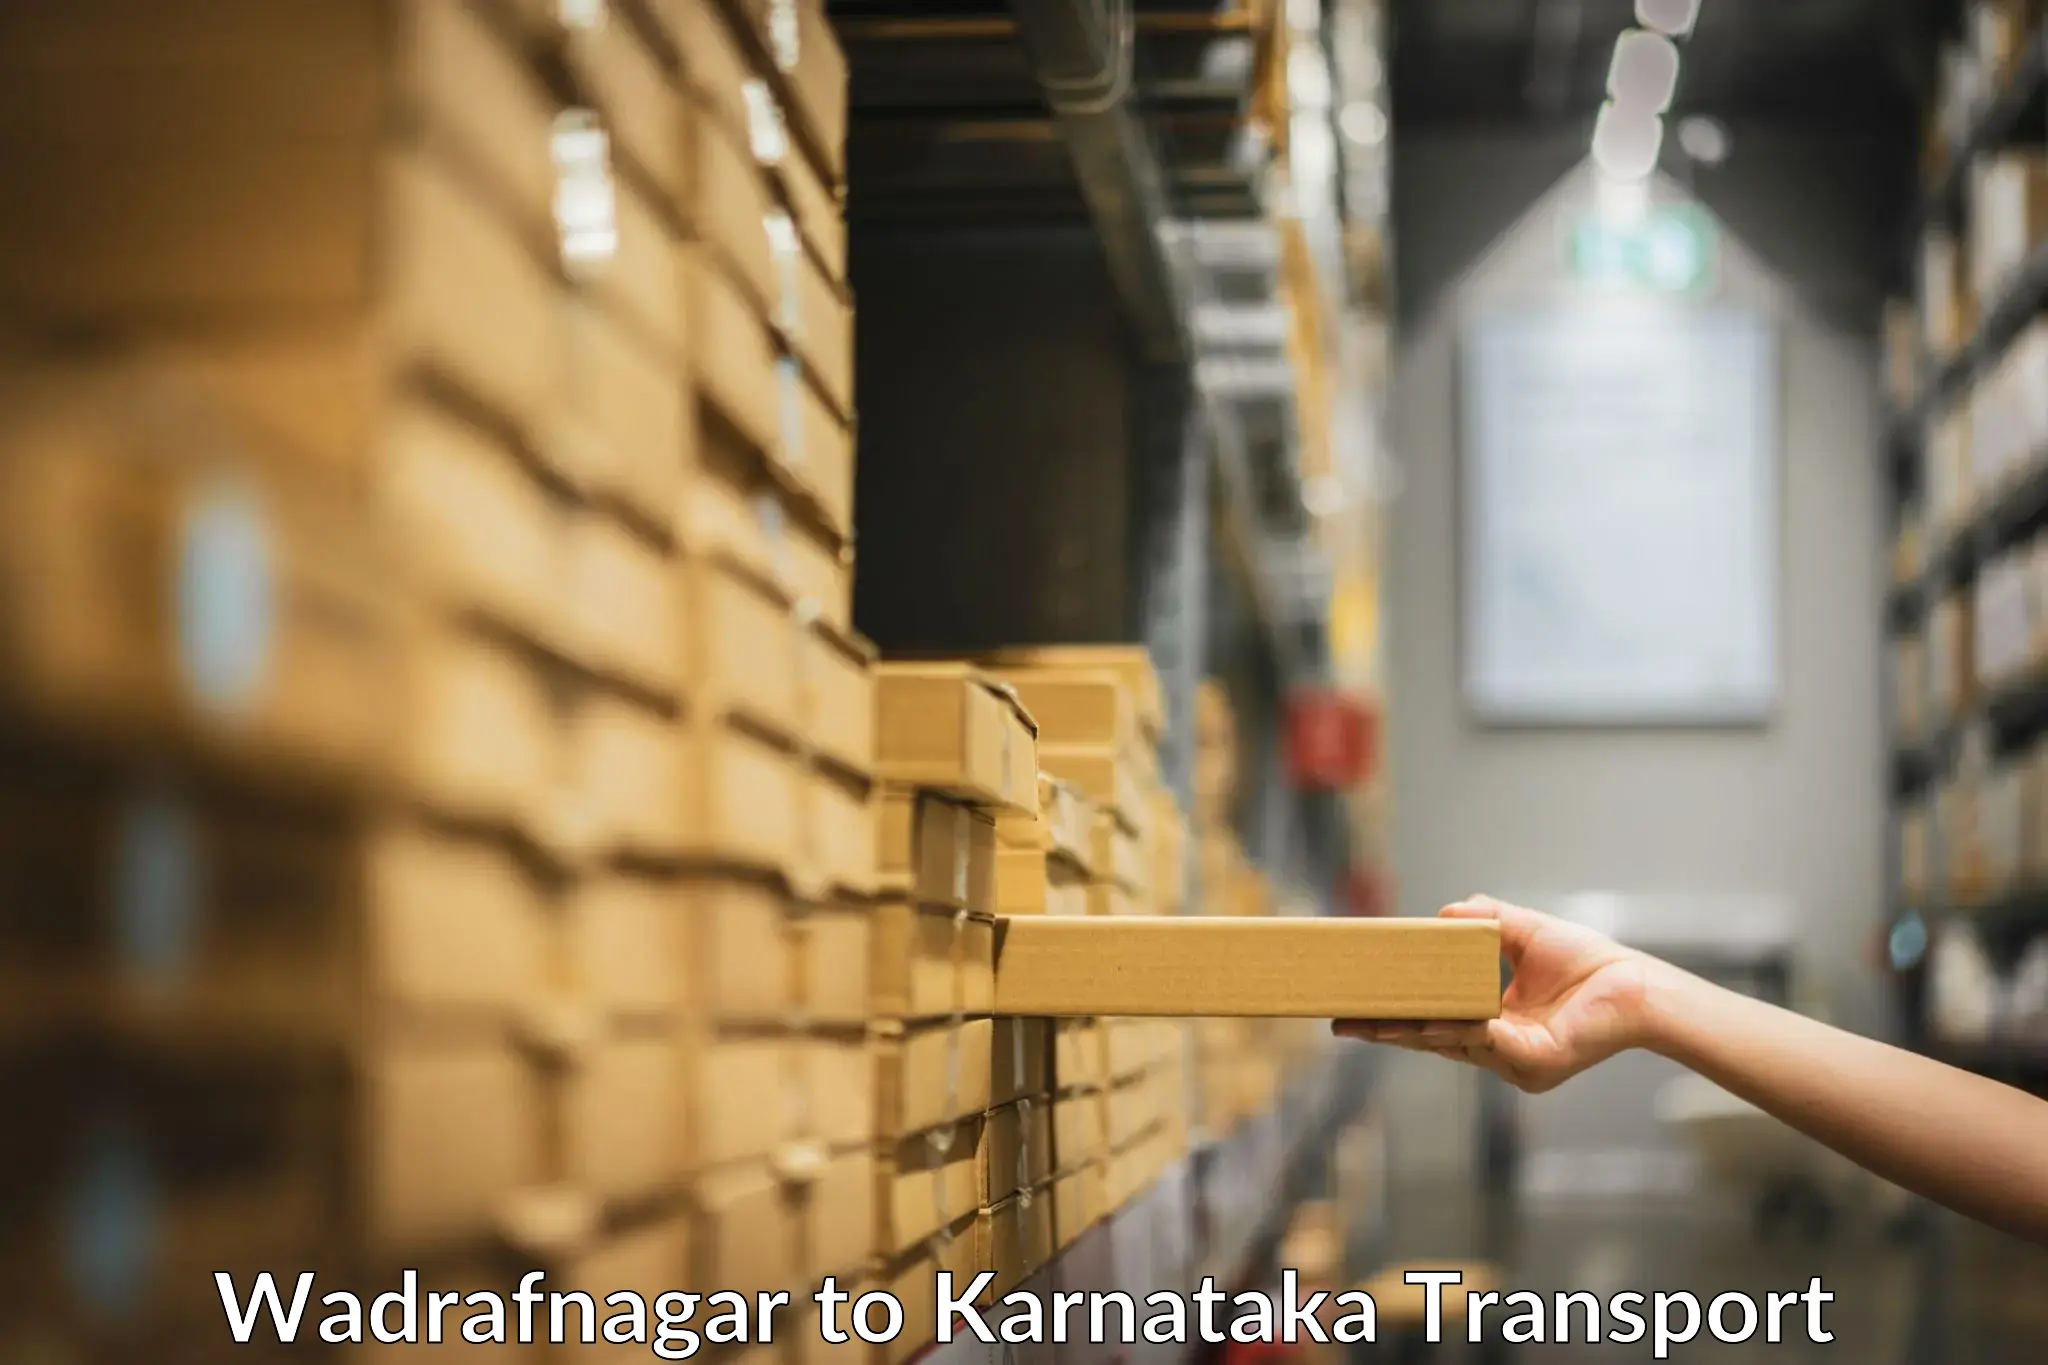 Pick up transport service Wadrafnagar to Karnataka